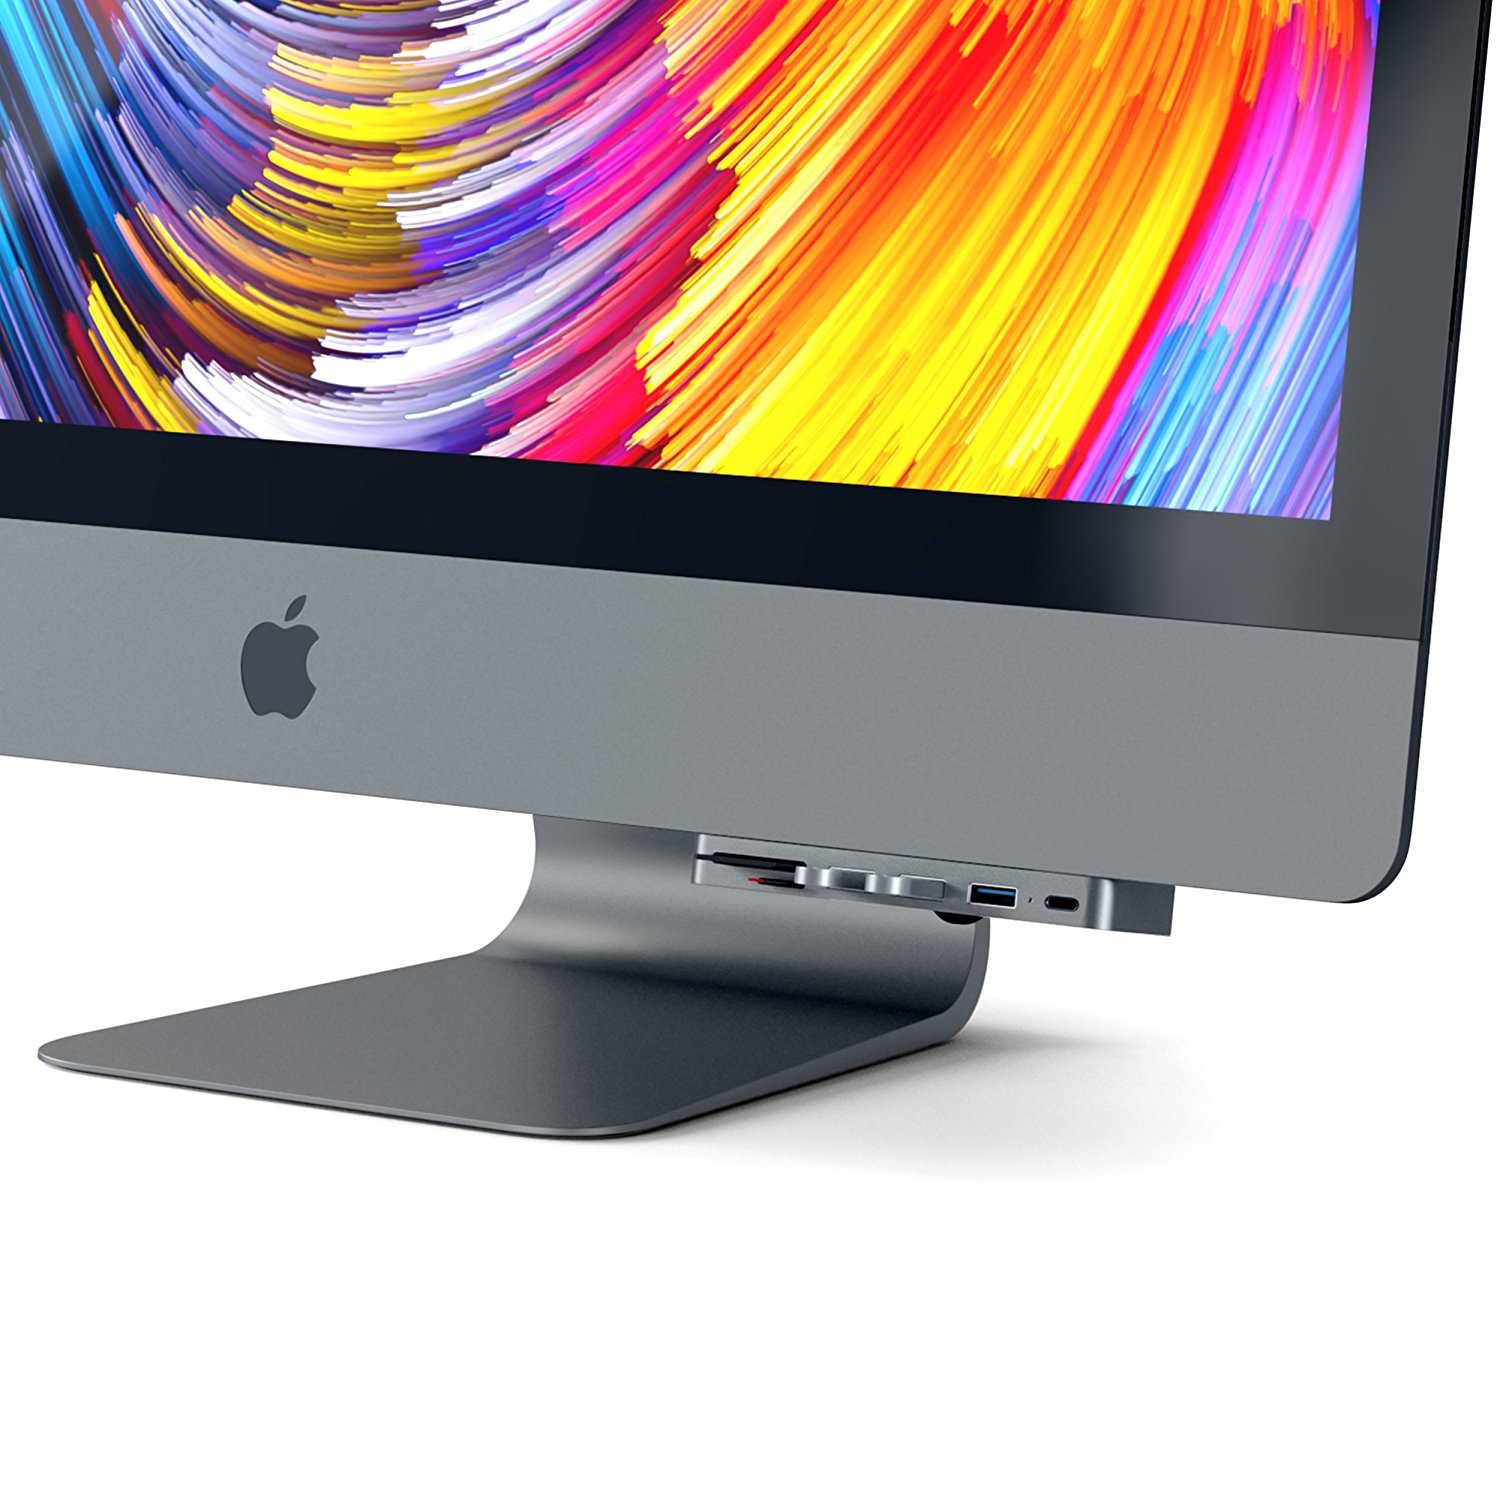 Satechi、｢iMac｣シリーズのディスプレイ下に装着出来るUSBハブ｢クランプハブ Pro｣のスペースグレイモデルを販売開始